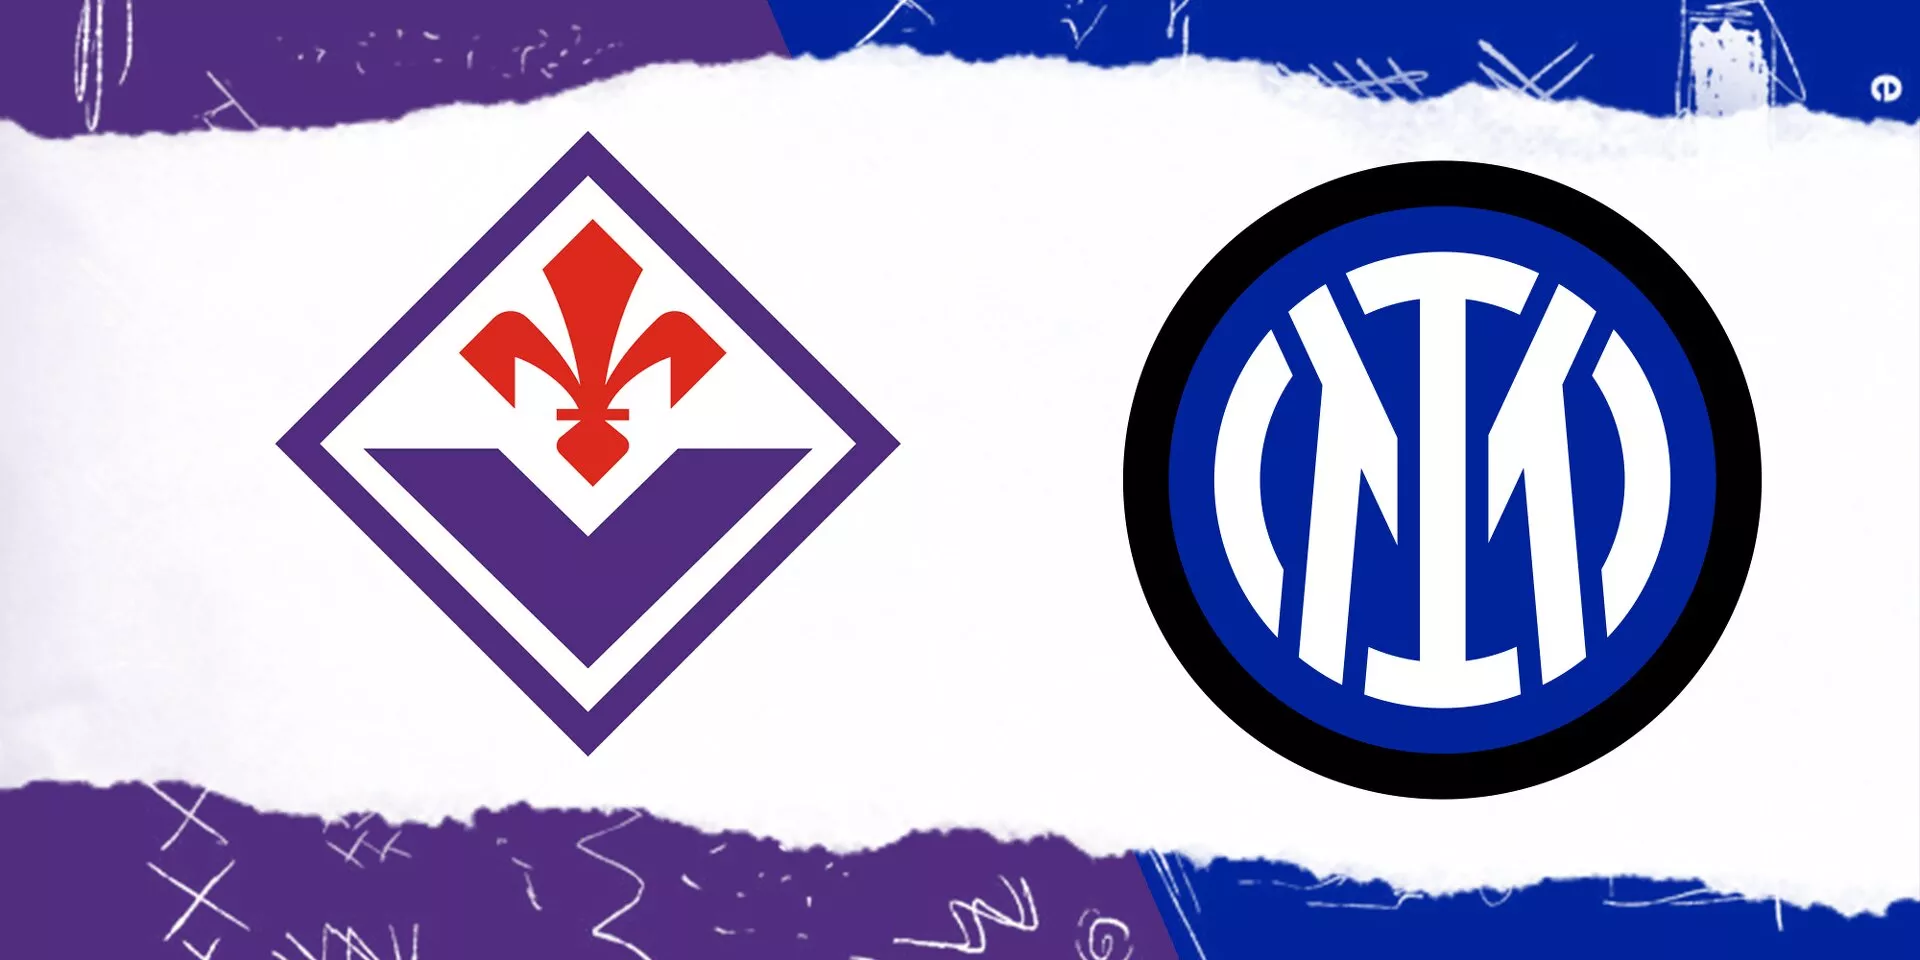 Coppa Italia Final 2022-23: Fiorentina vs Inter Milan: Predicted lineup